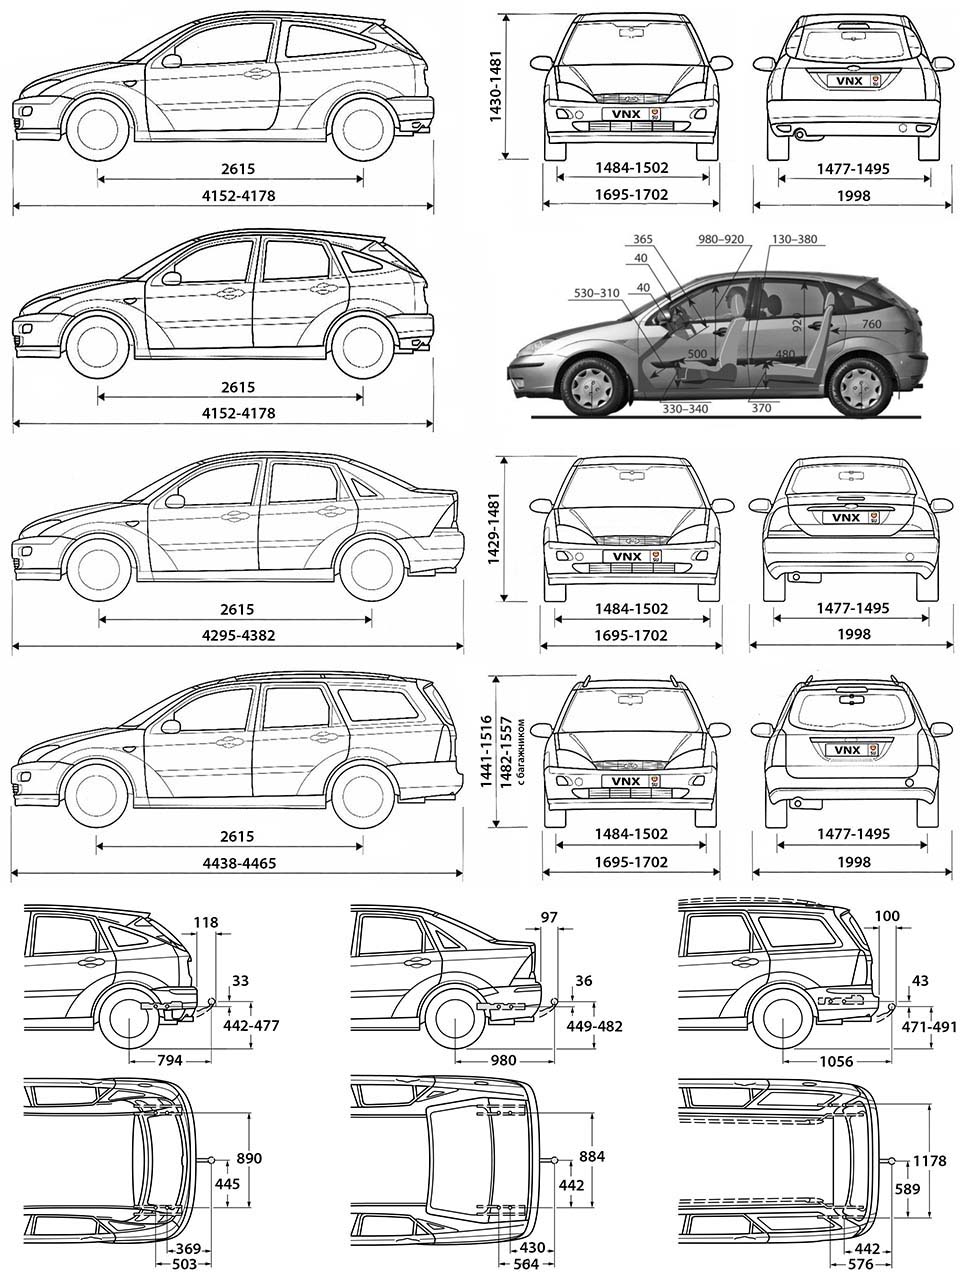 Ford Focus: цена и характеристики, отзывы, фото и обзоры